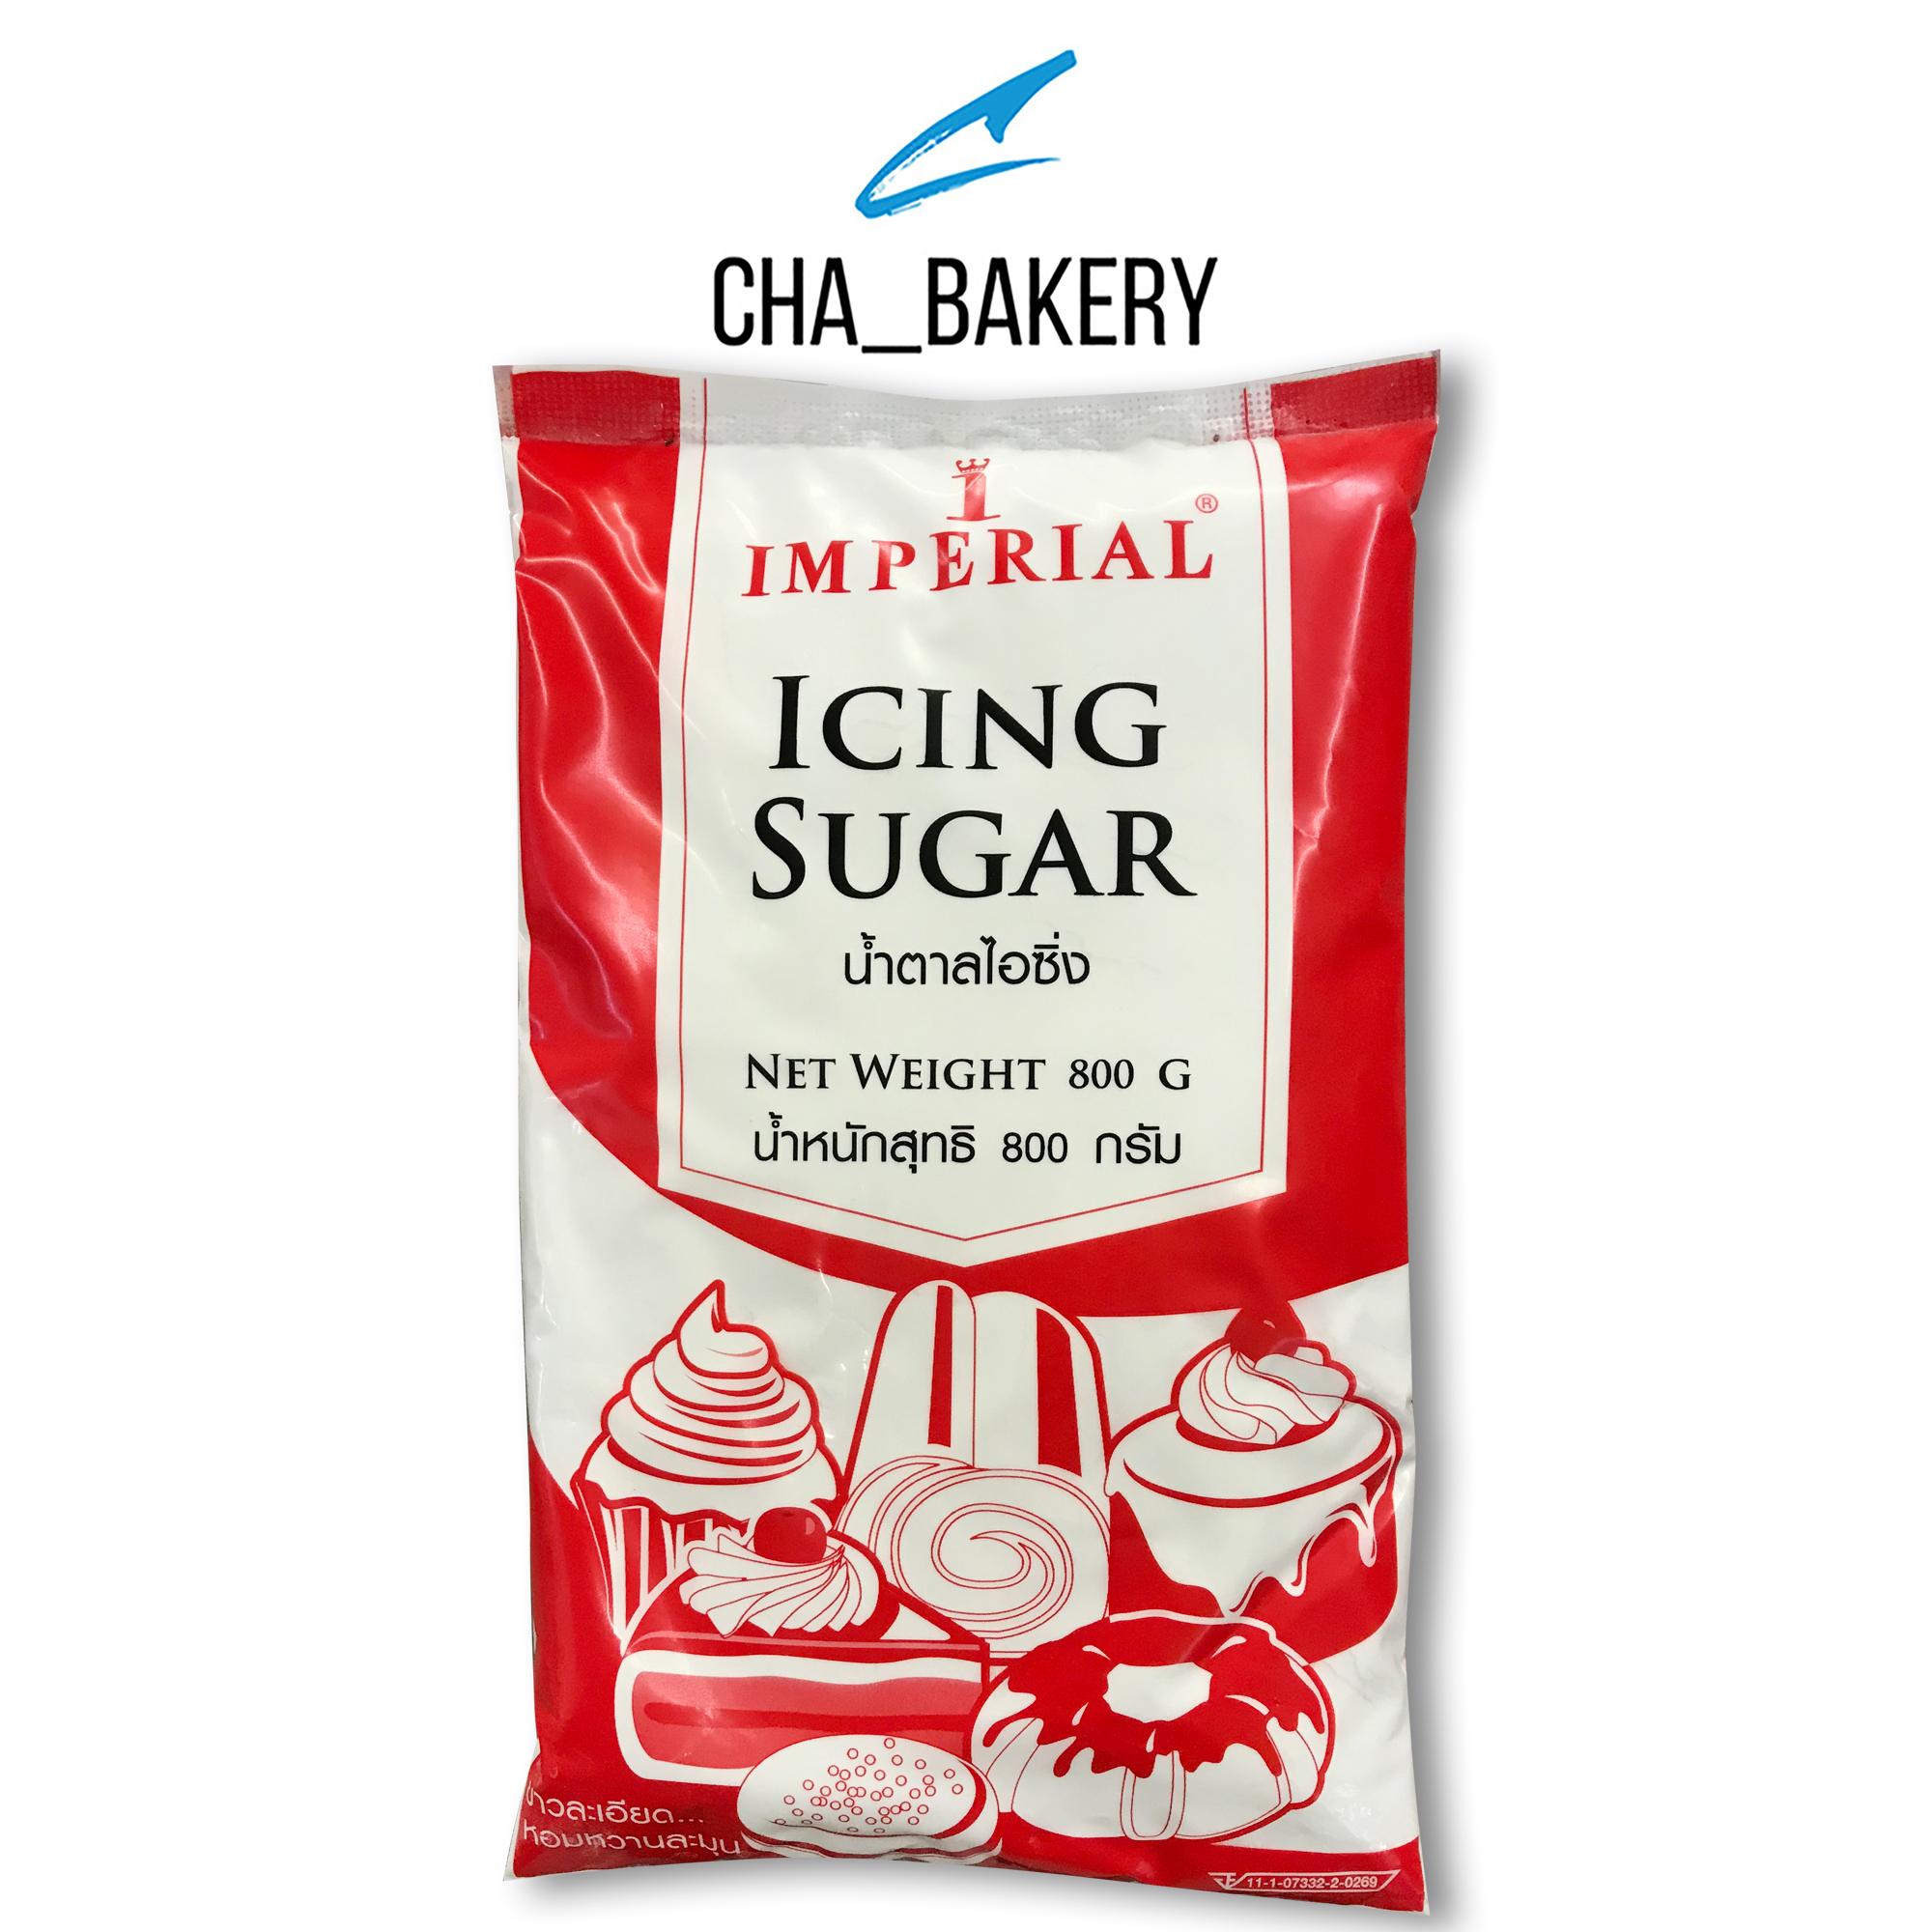 Imperial icing sugar น้ำตาลไอซิ่ง ตราอิมพีเรียล 800 กรัม